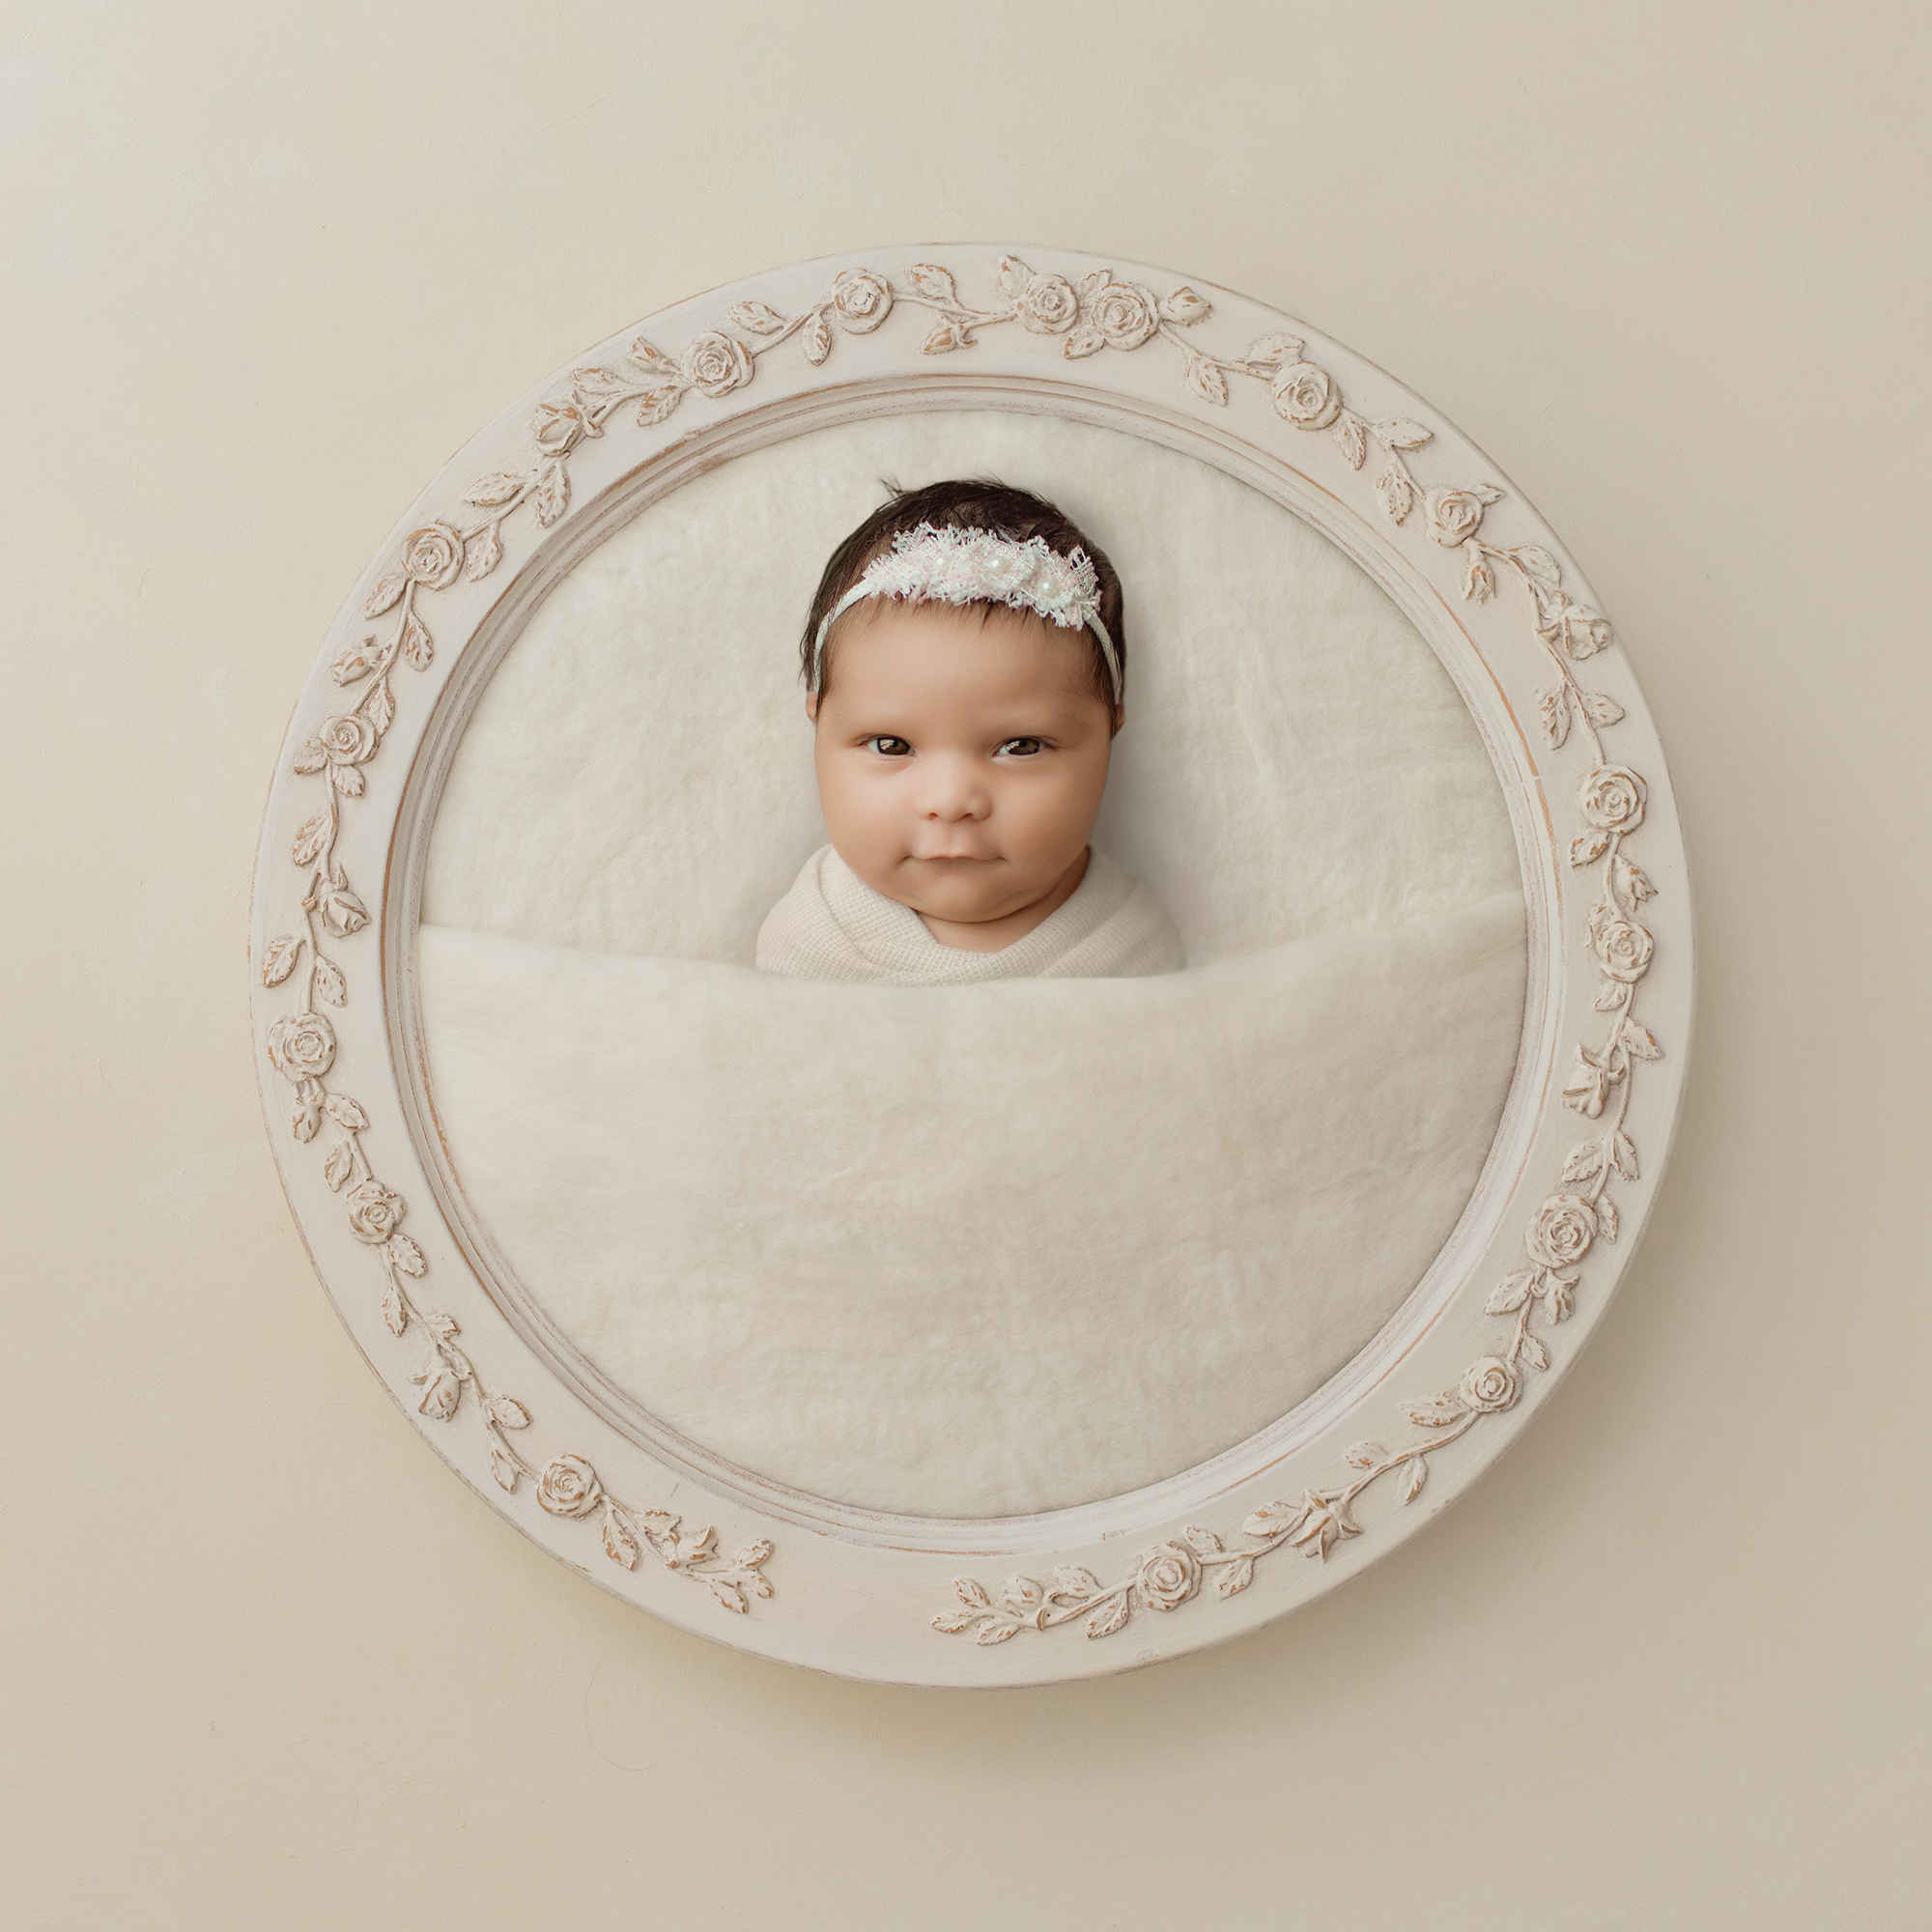 Newborn baby in cream frame portrait